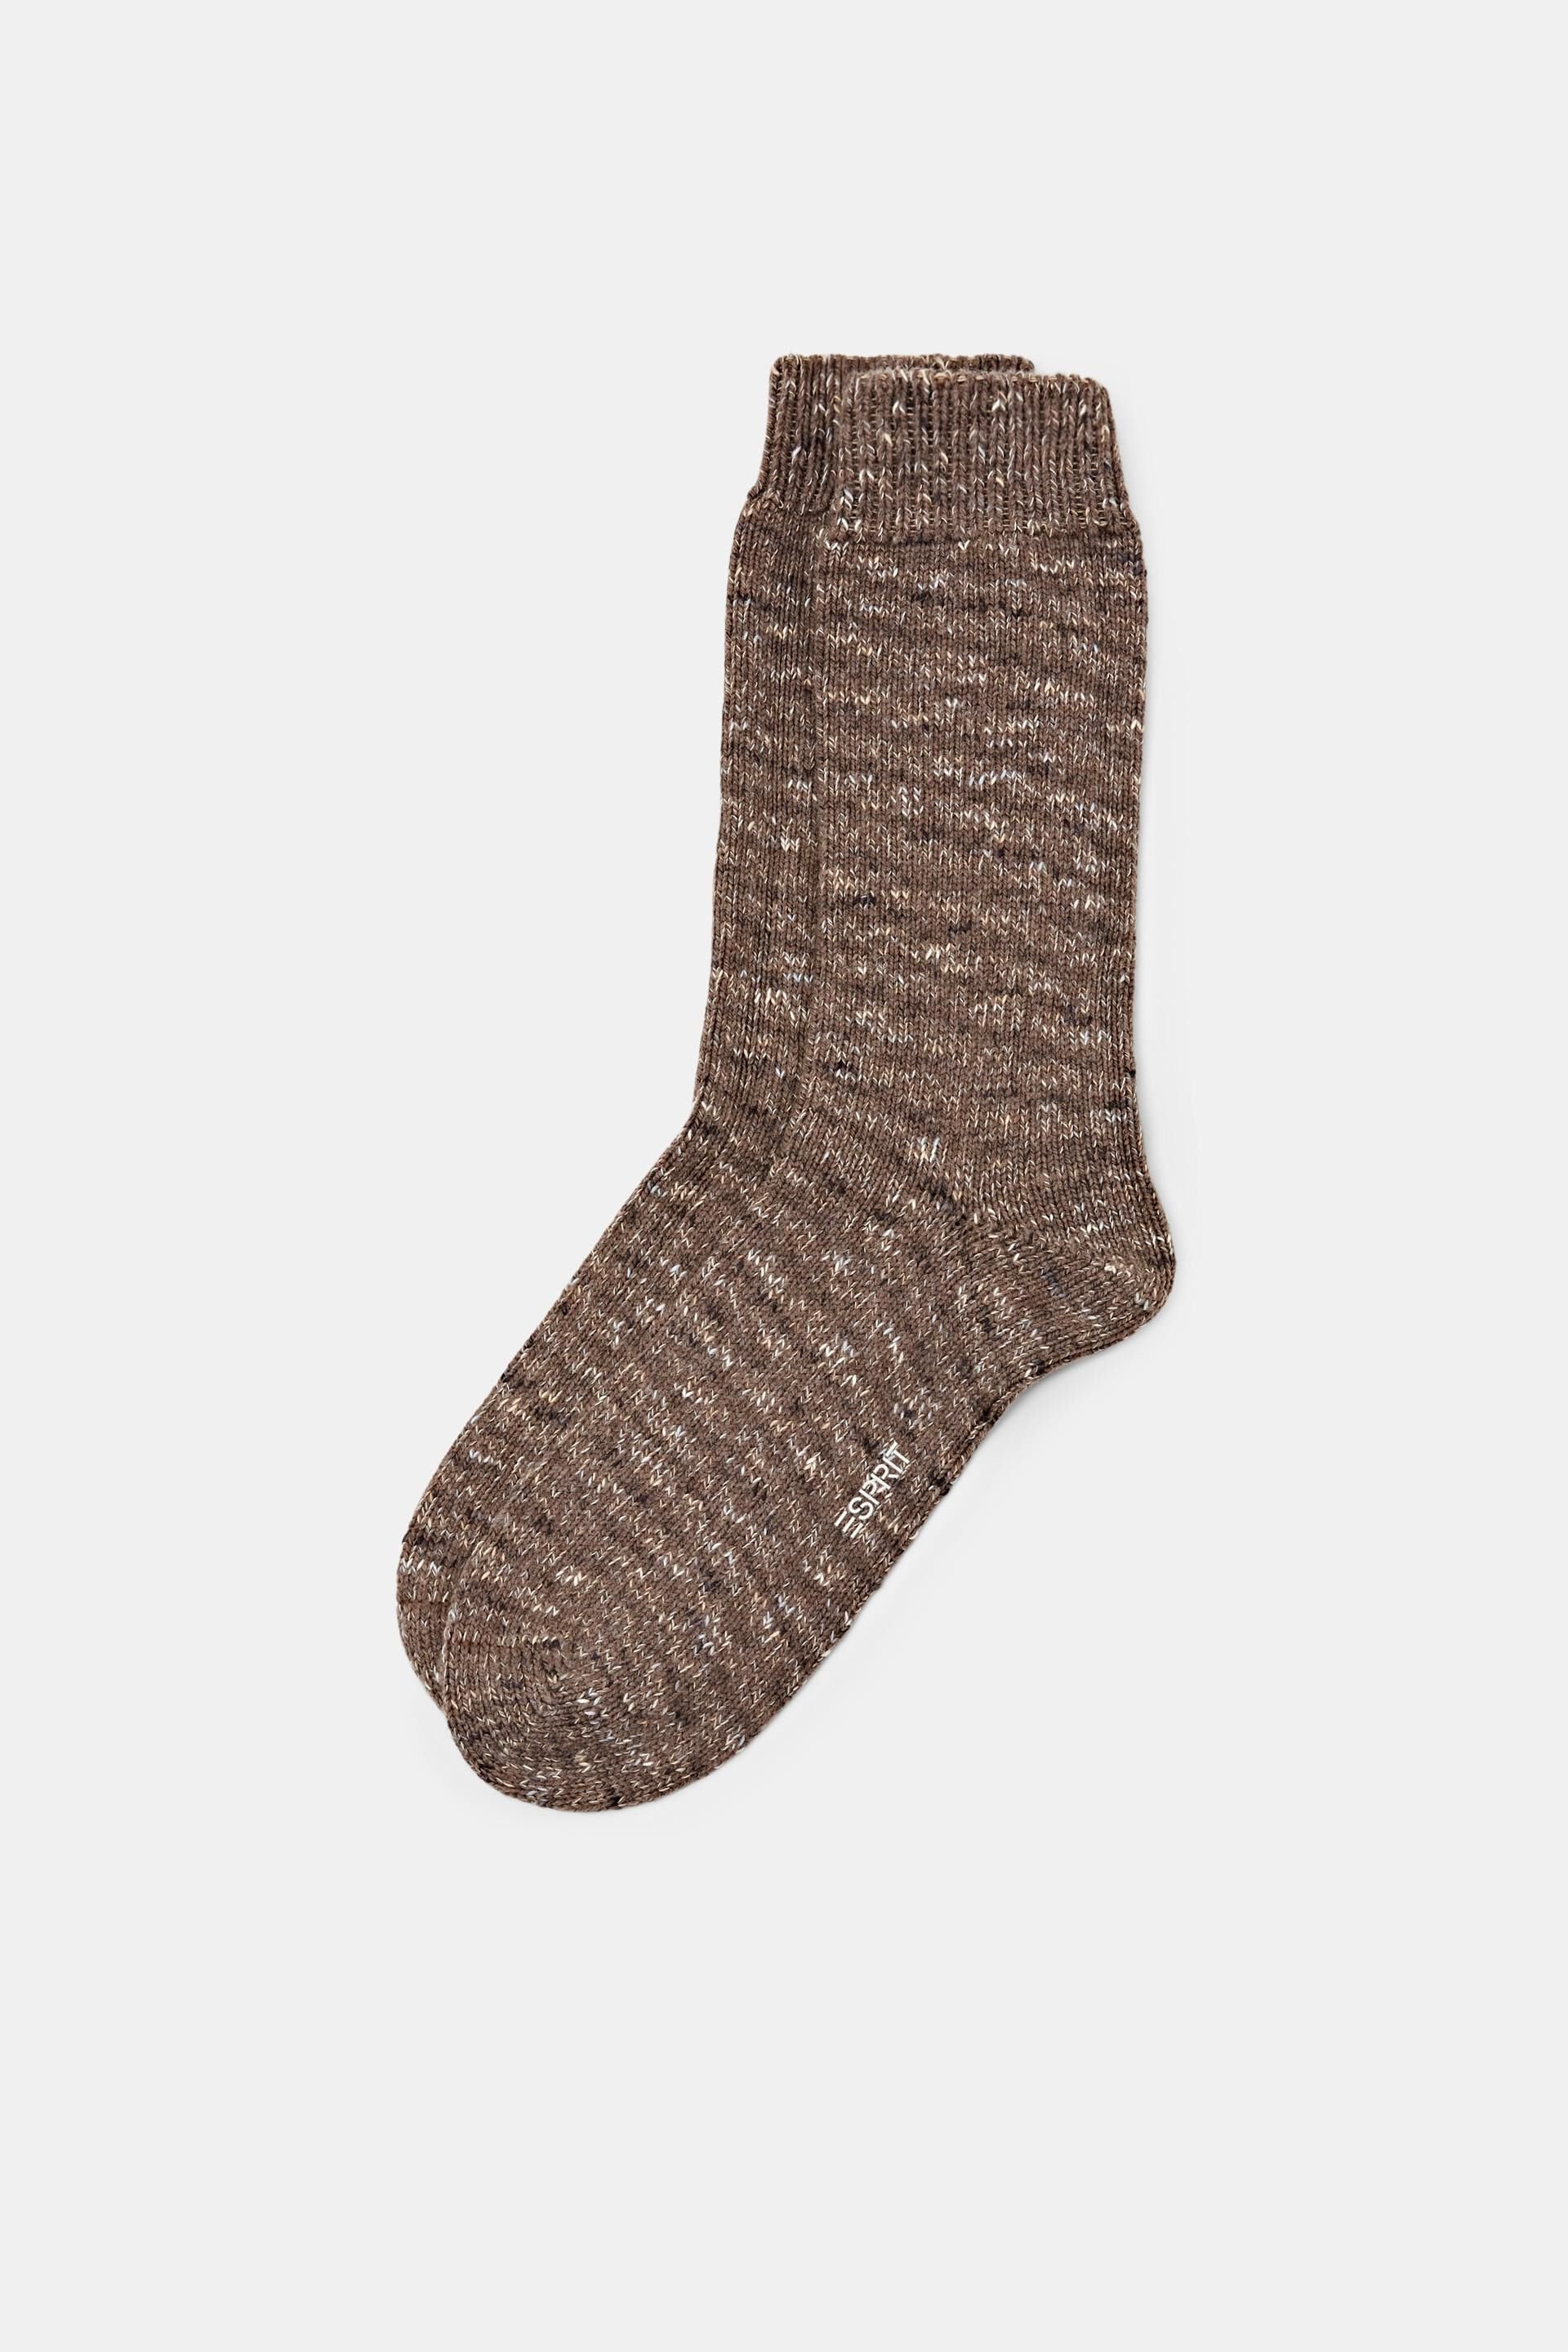 Esprit socks knit boot Chunky